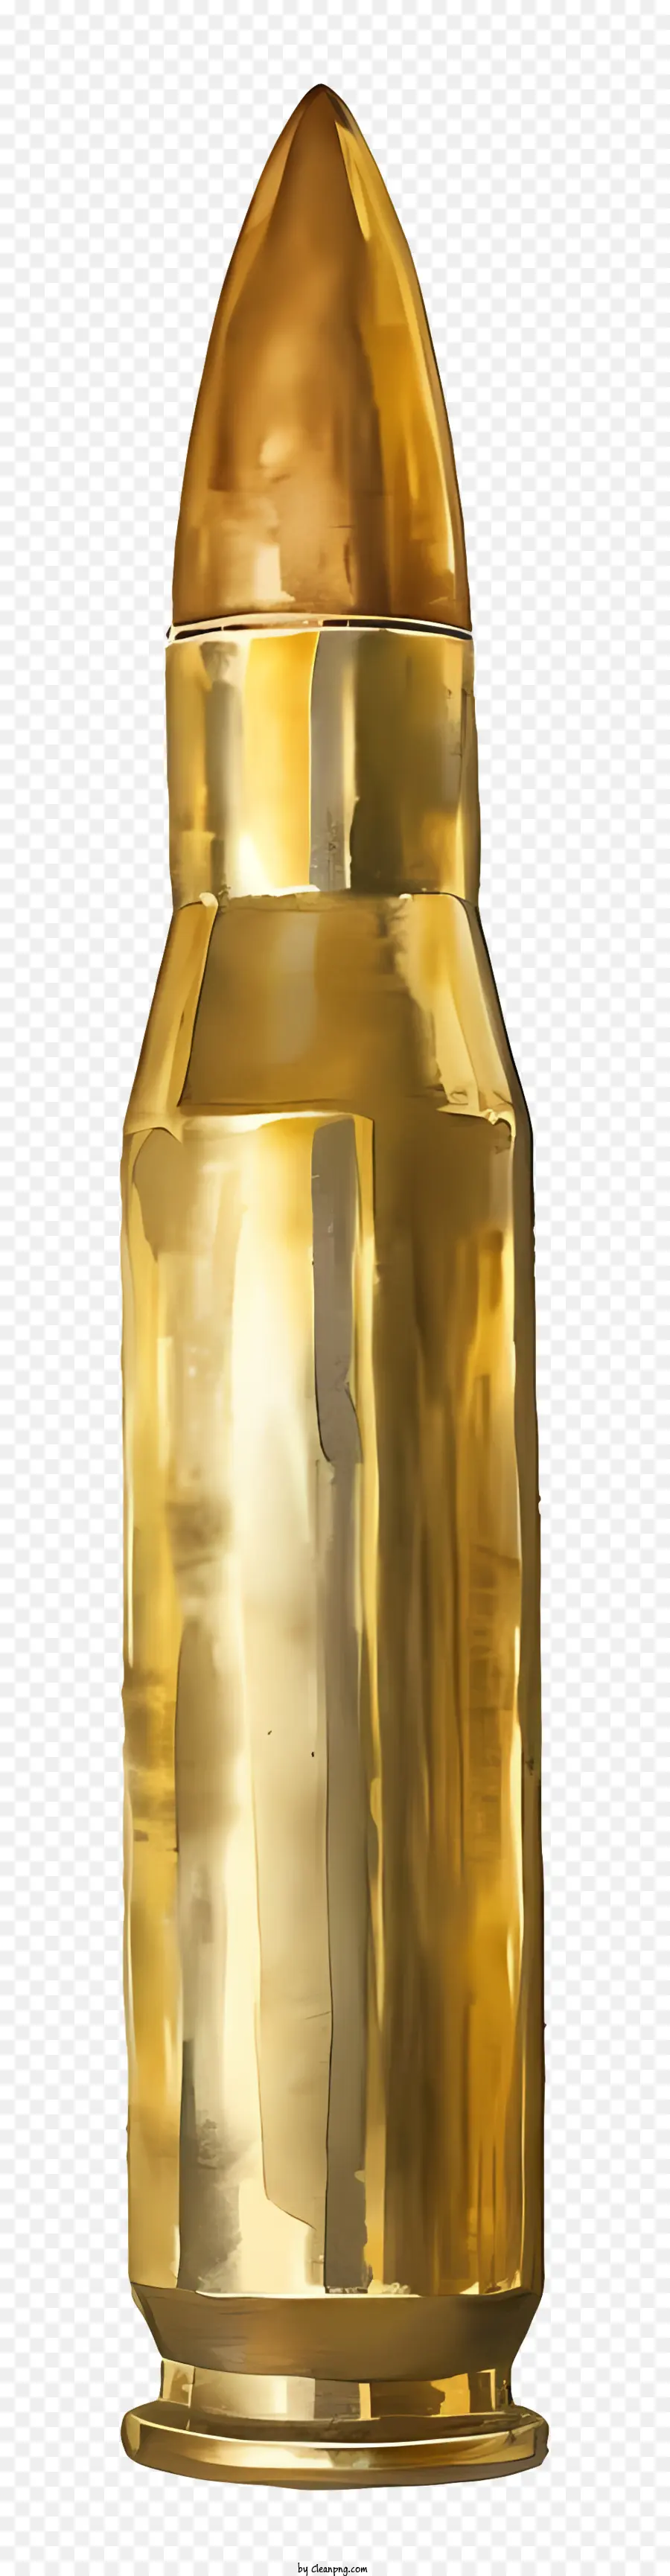 Bullet Messing Kanonenkugel großer Rundform Metallic Finish - Große, runde, polierte Messingkanonball in goldener Farbe